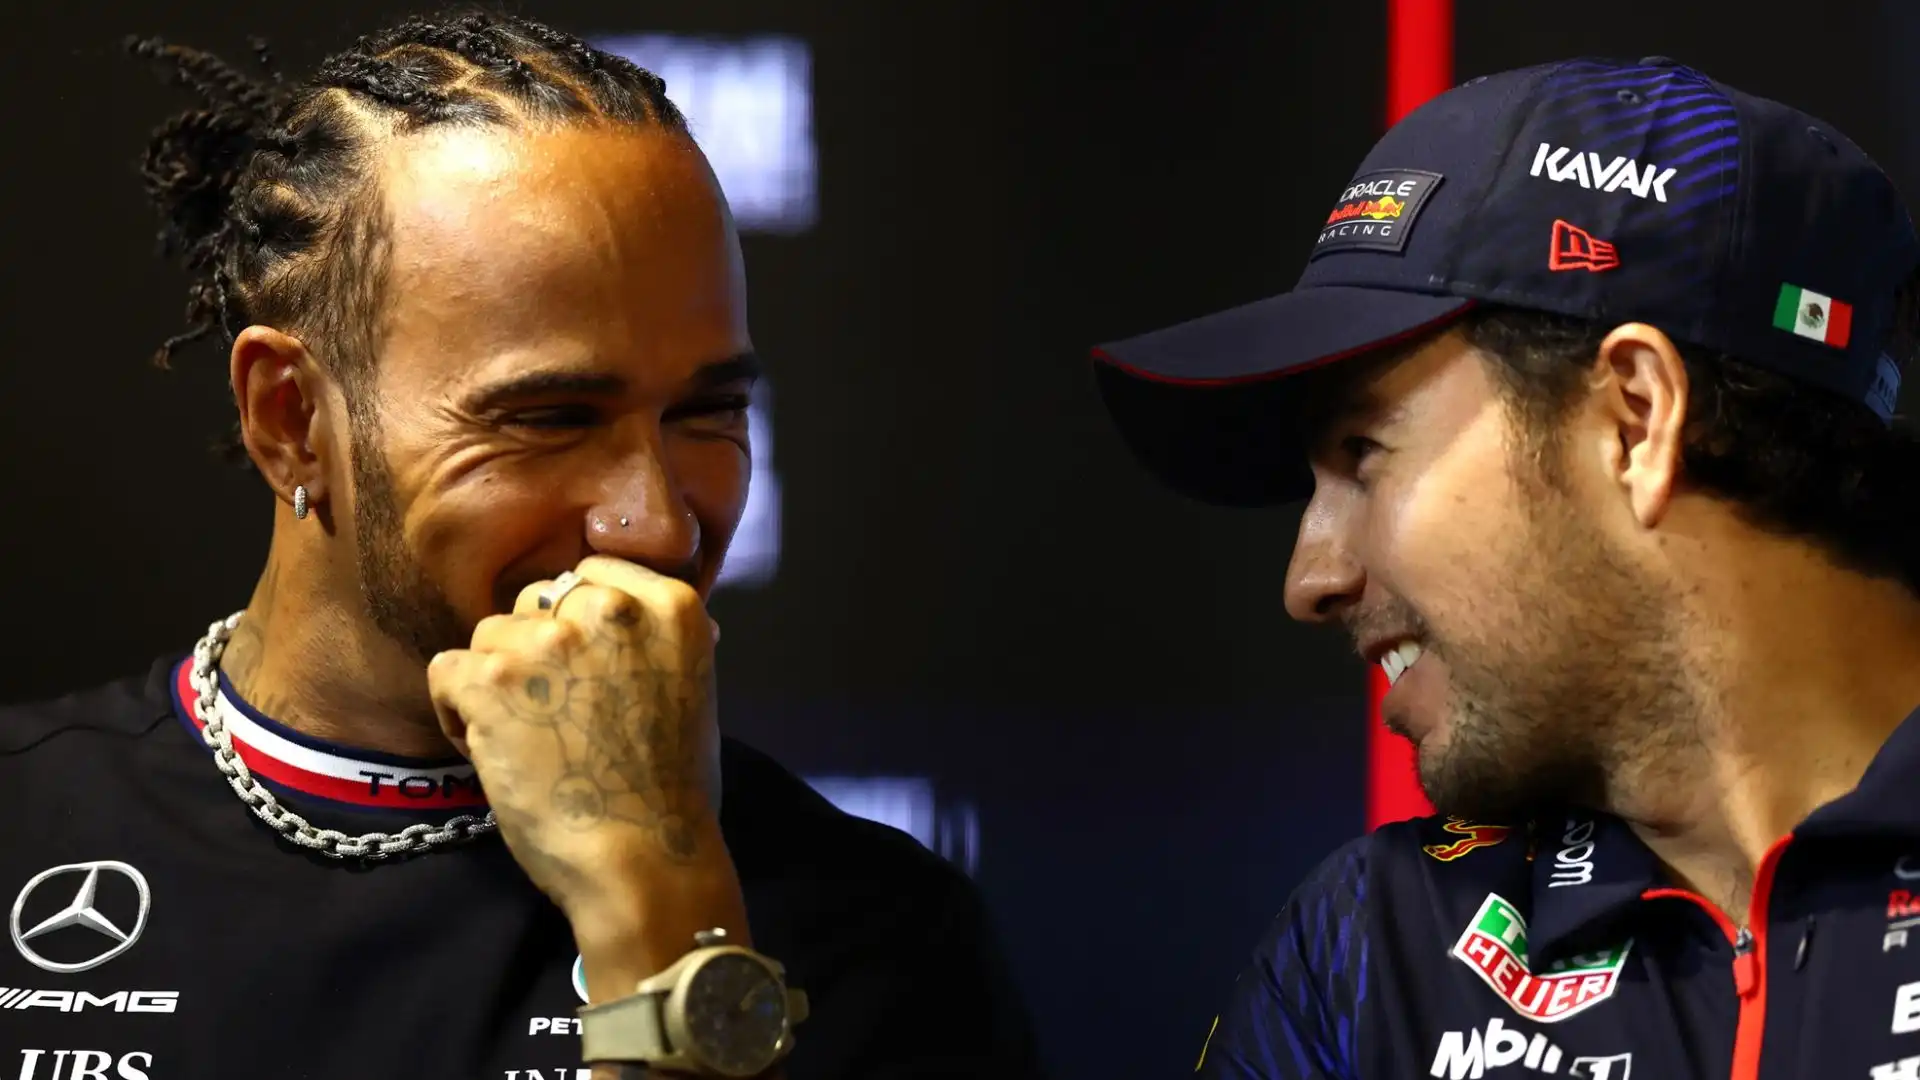 Il pilota messicano negli scorsi giorni ha detto di aver avuto problemi psicologici durante gli ultimi anni al fianco di Verstappen alla Red Bull